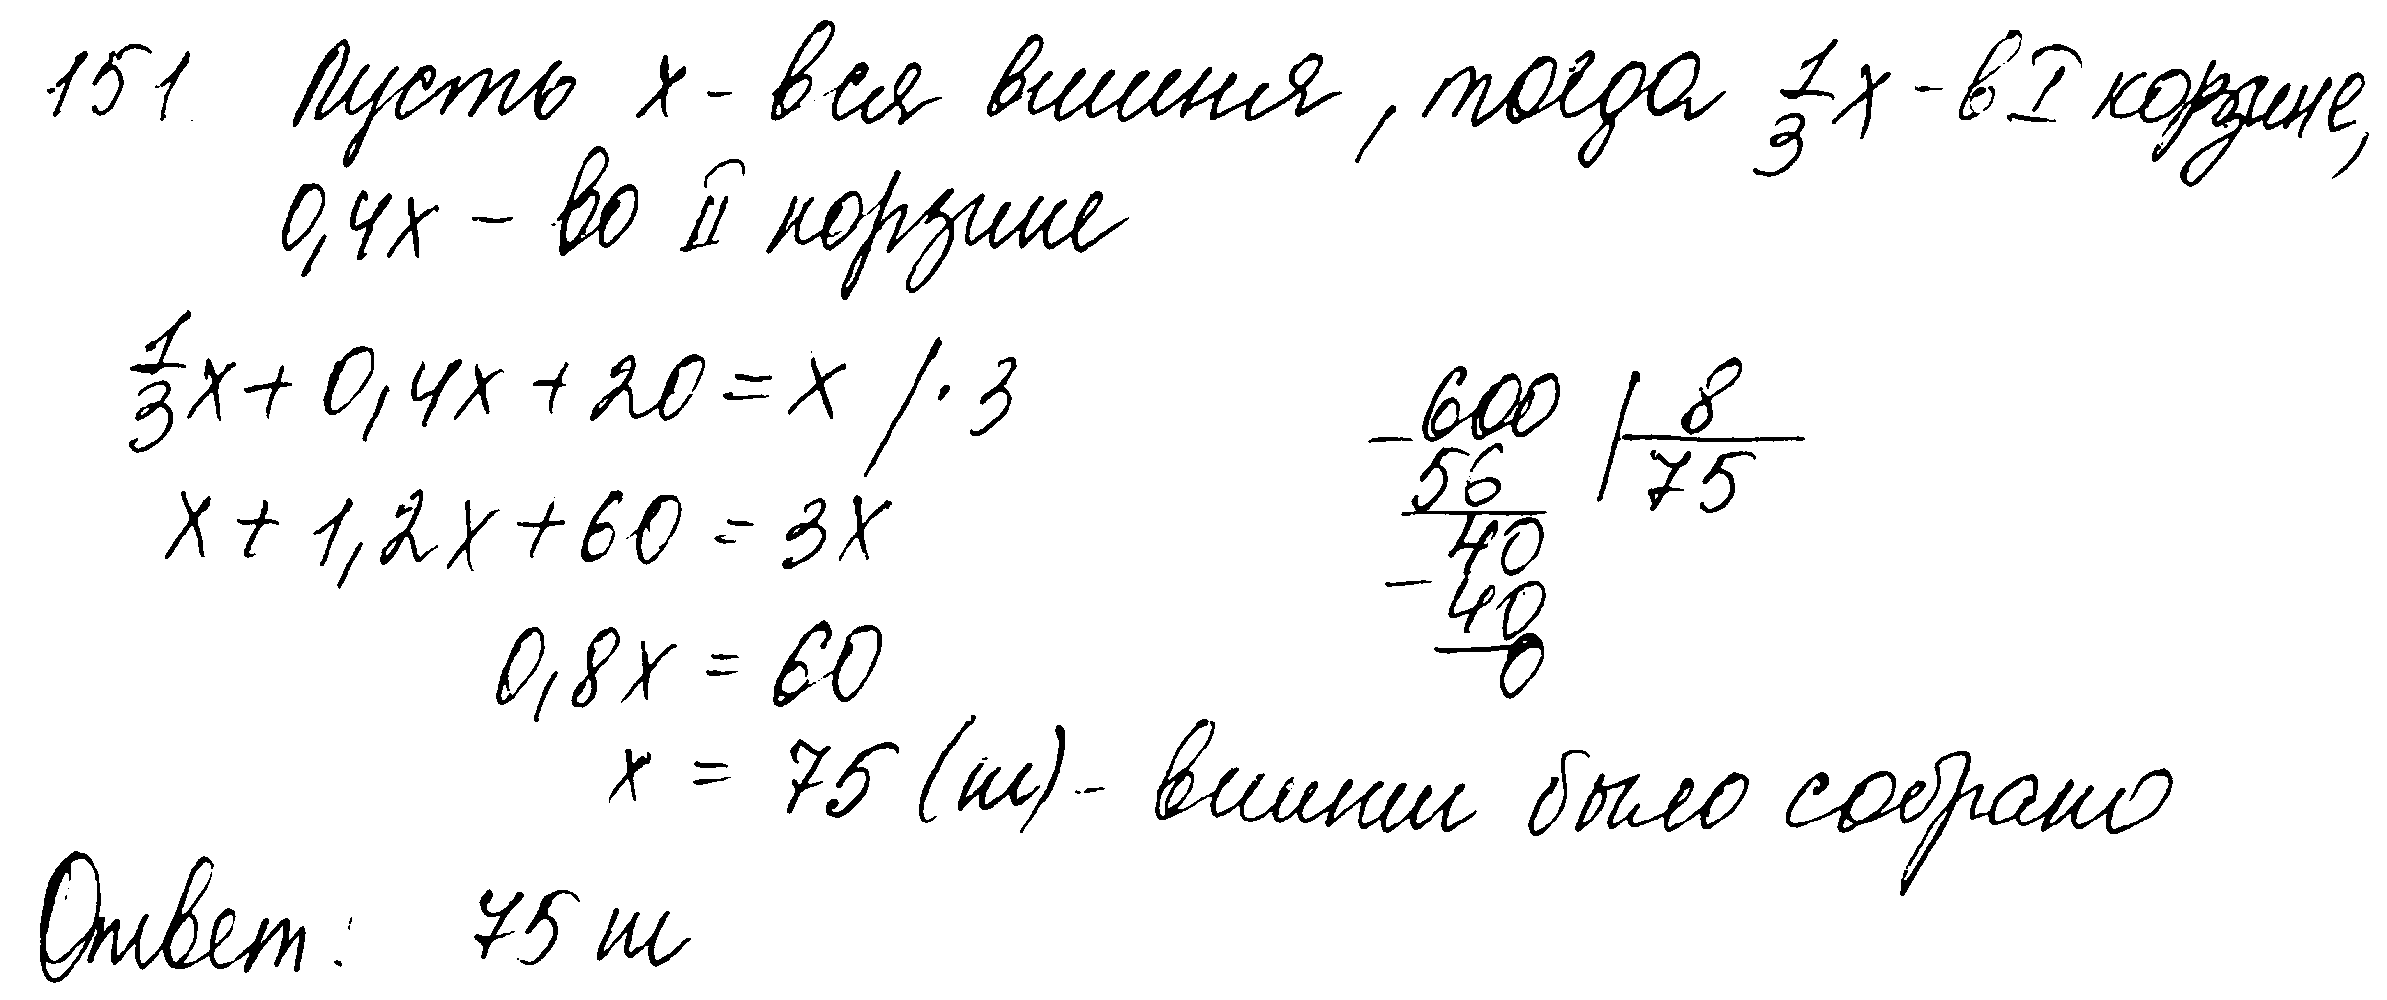 ГДЗ Математика 6 класс - 151